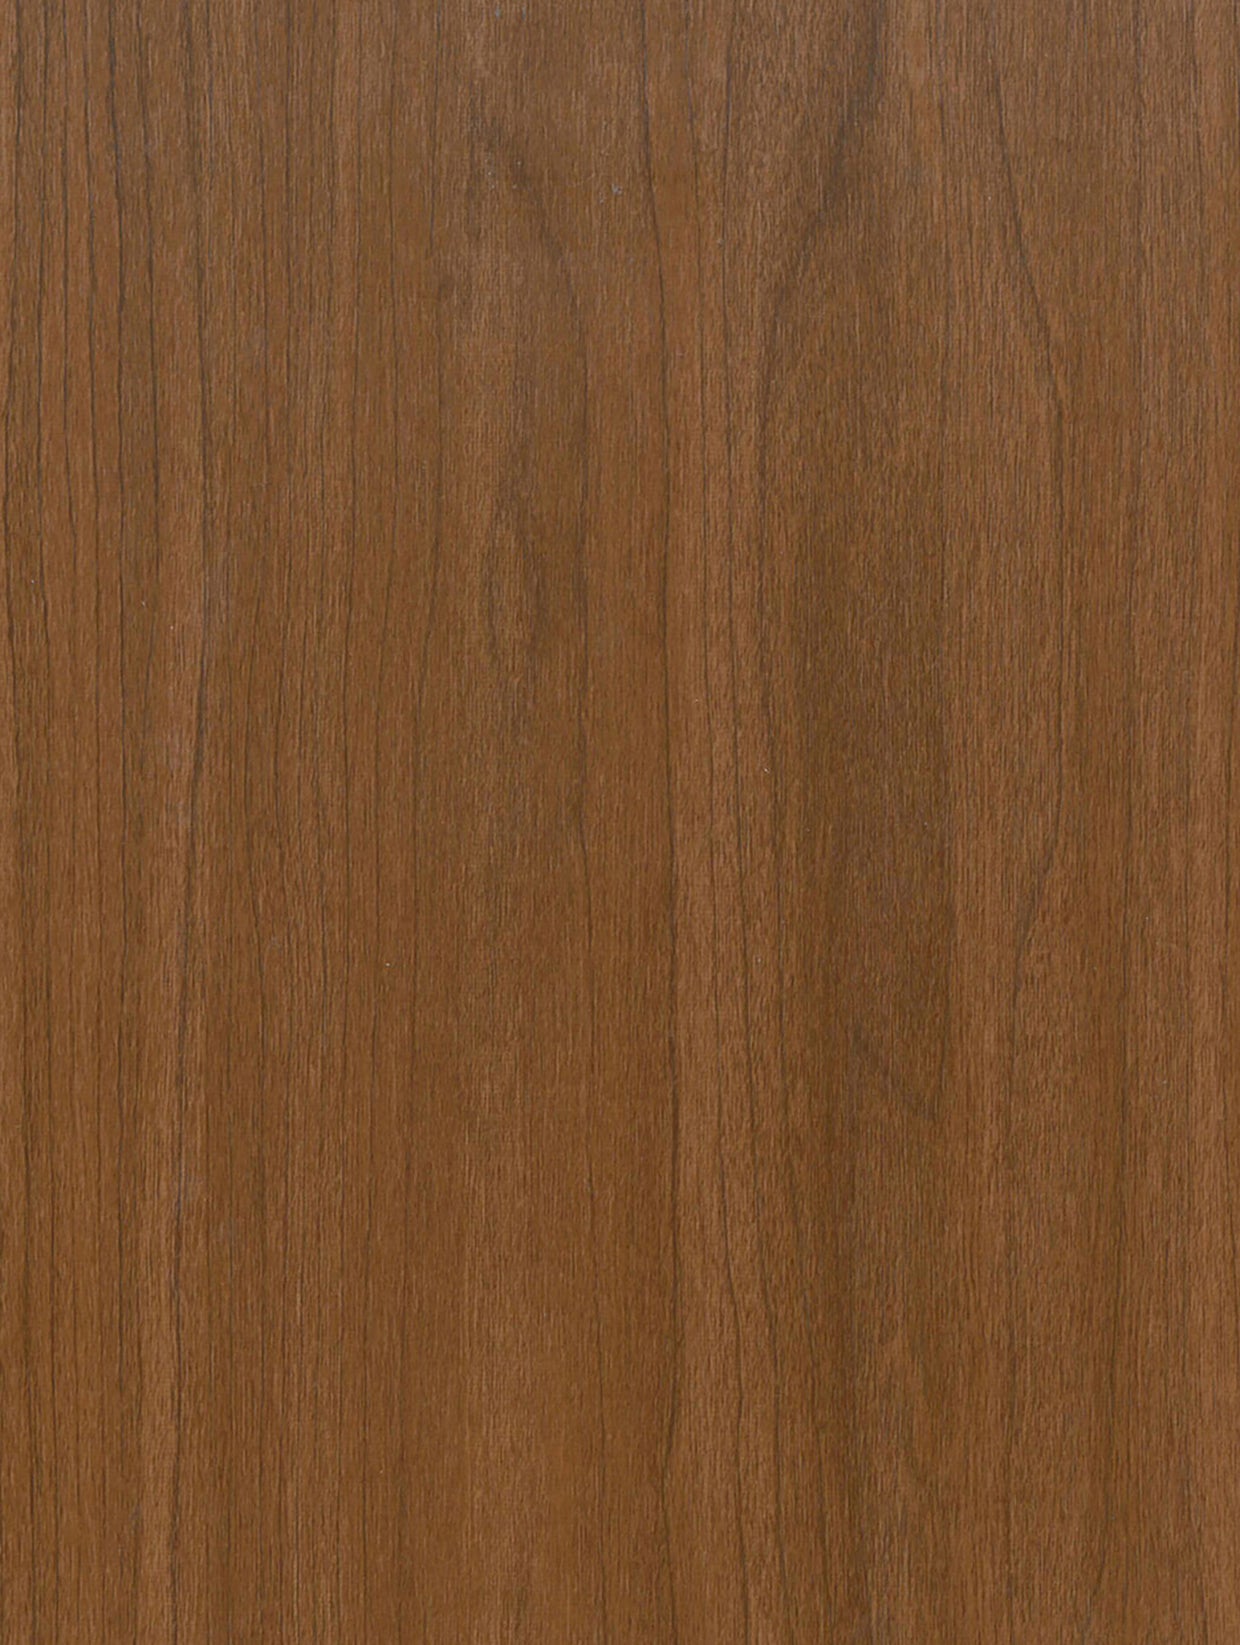 Wood-Dark | Holzdekor Dunkel Rost/Soft/Strukturiert - Möbelfolie Selbstklebende Tapete Vinyl Folie für Möbel Wand Regal (100x122cm)